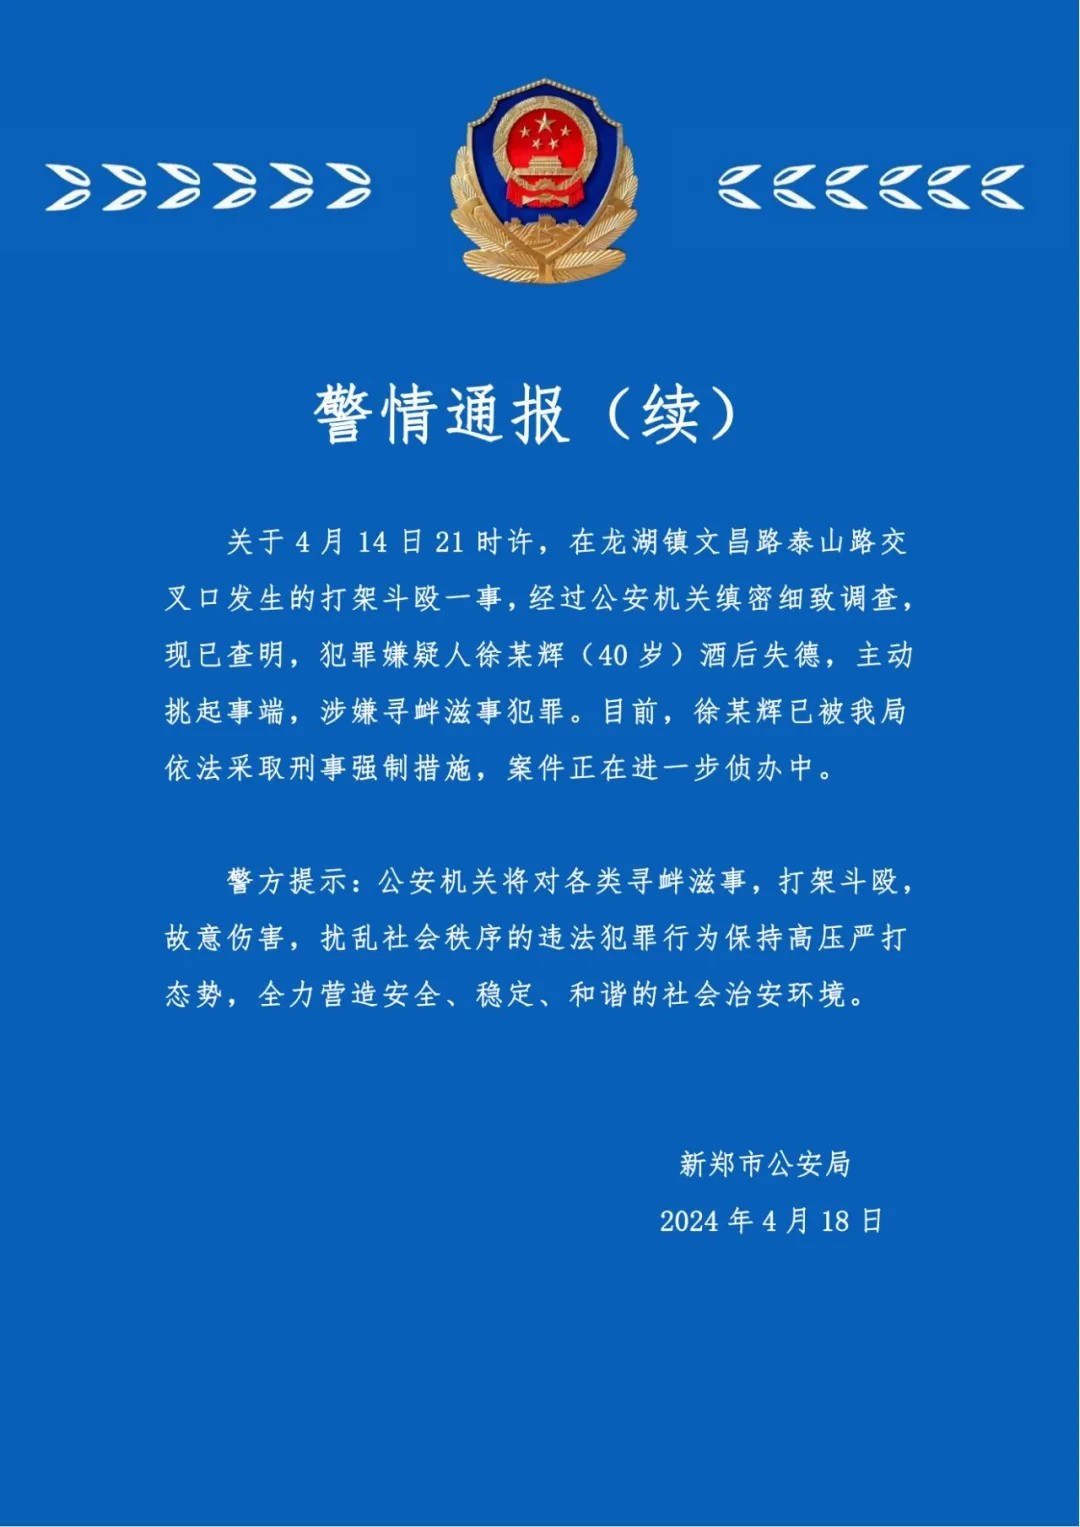 2024年4月18日，郑州市新郑市公安局发布《警情通报》（续）。.jpg